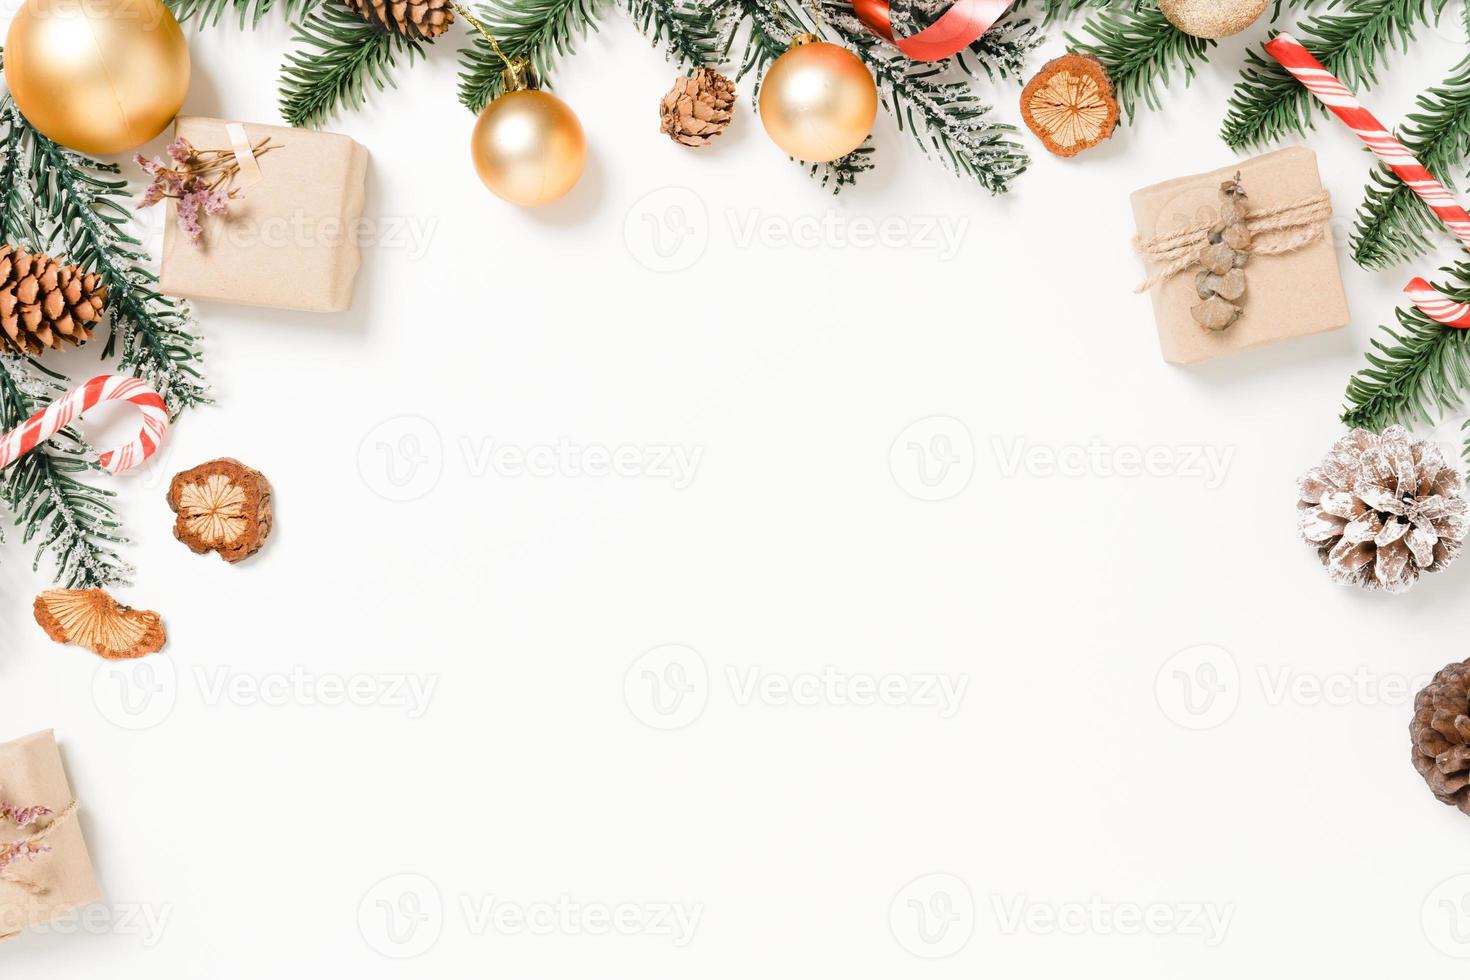 minimale creatieve platte lay van traditionele kerstcompositie en nieuwjaarsvakantieseizoen. bovenaanzicht winter kerstversiering op witte achtergrond met lege ruimte voor tekst. kopieer ruimtefotografie. foto